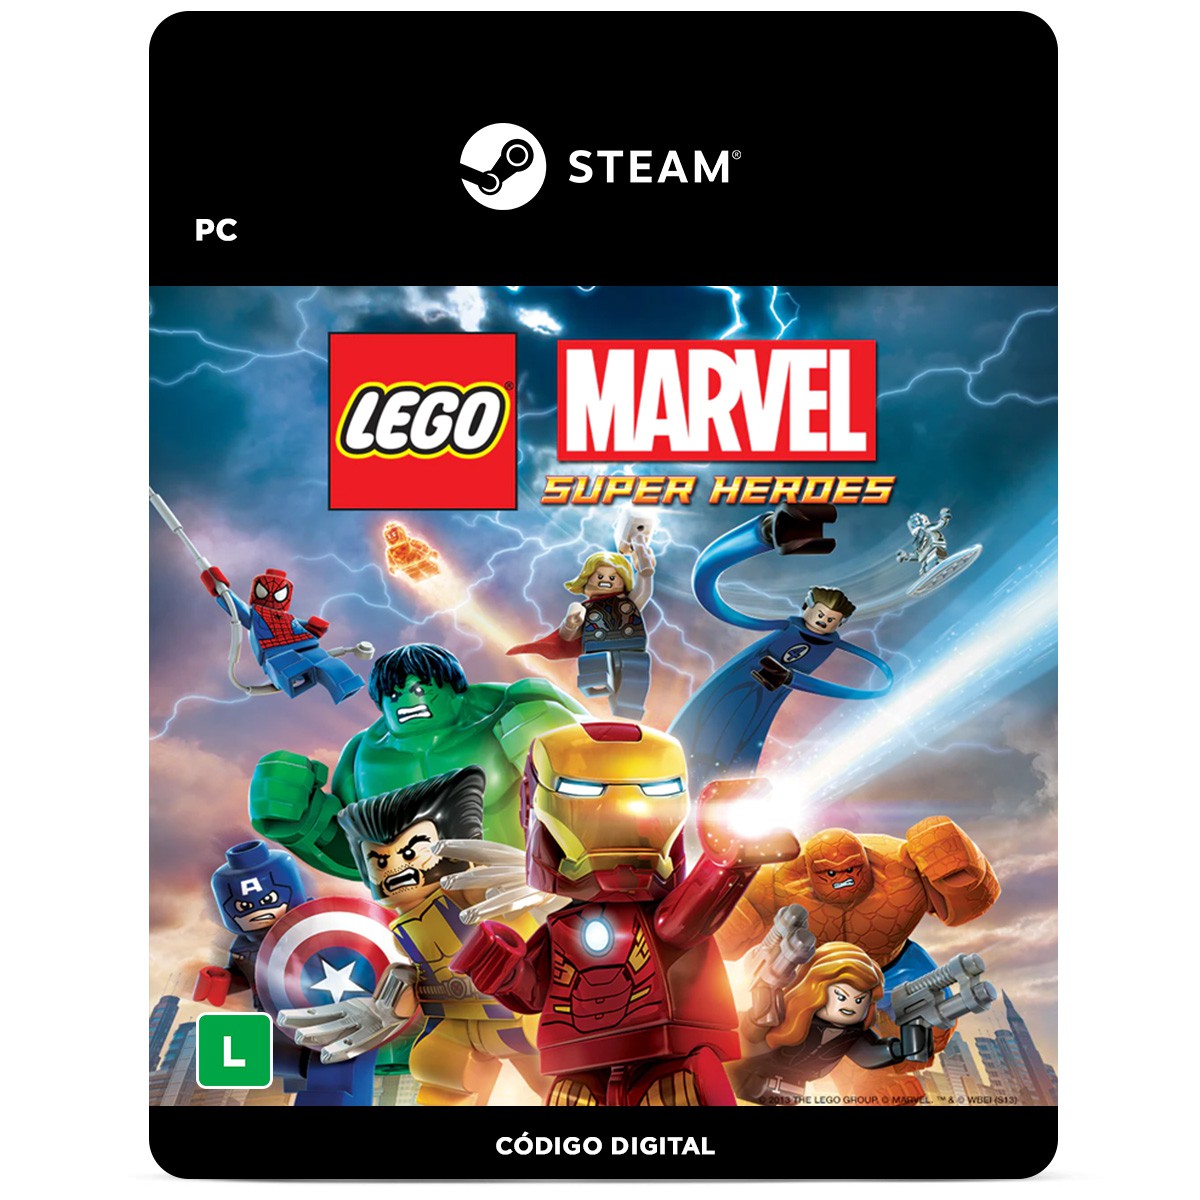 LEGO Marvel Super Heroes - PC Código Digital - PentaKill Store - PentaKill  Store - Gift Card e Games, lego marvel super heroes códigos peças x10